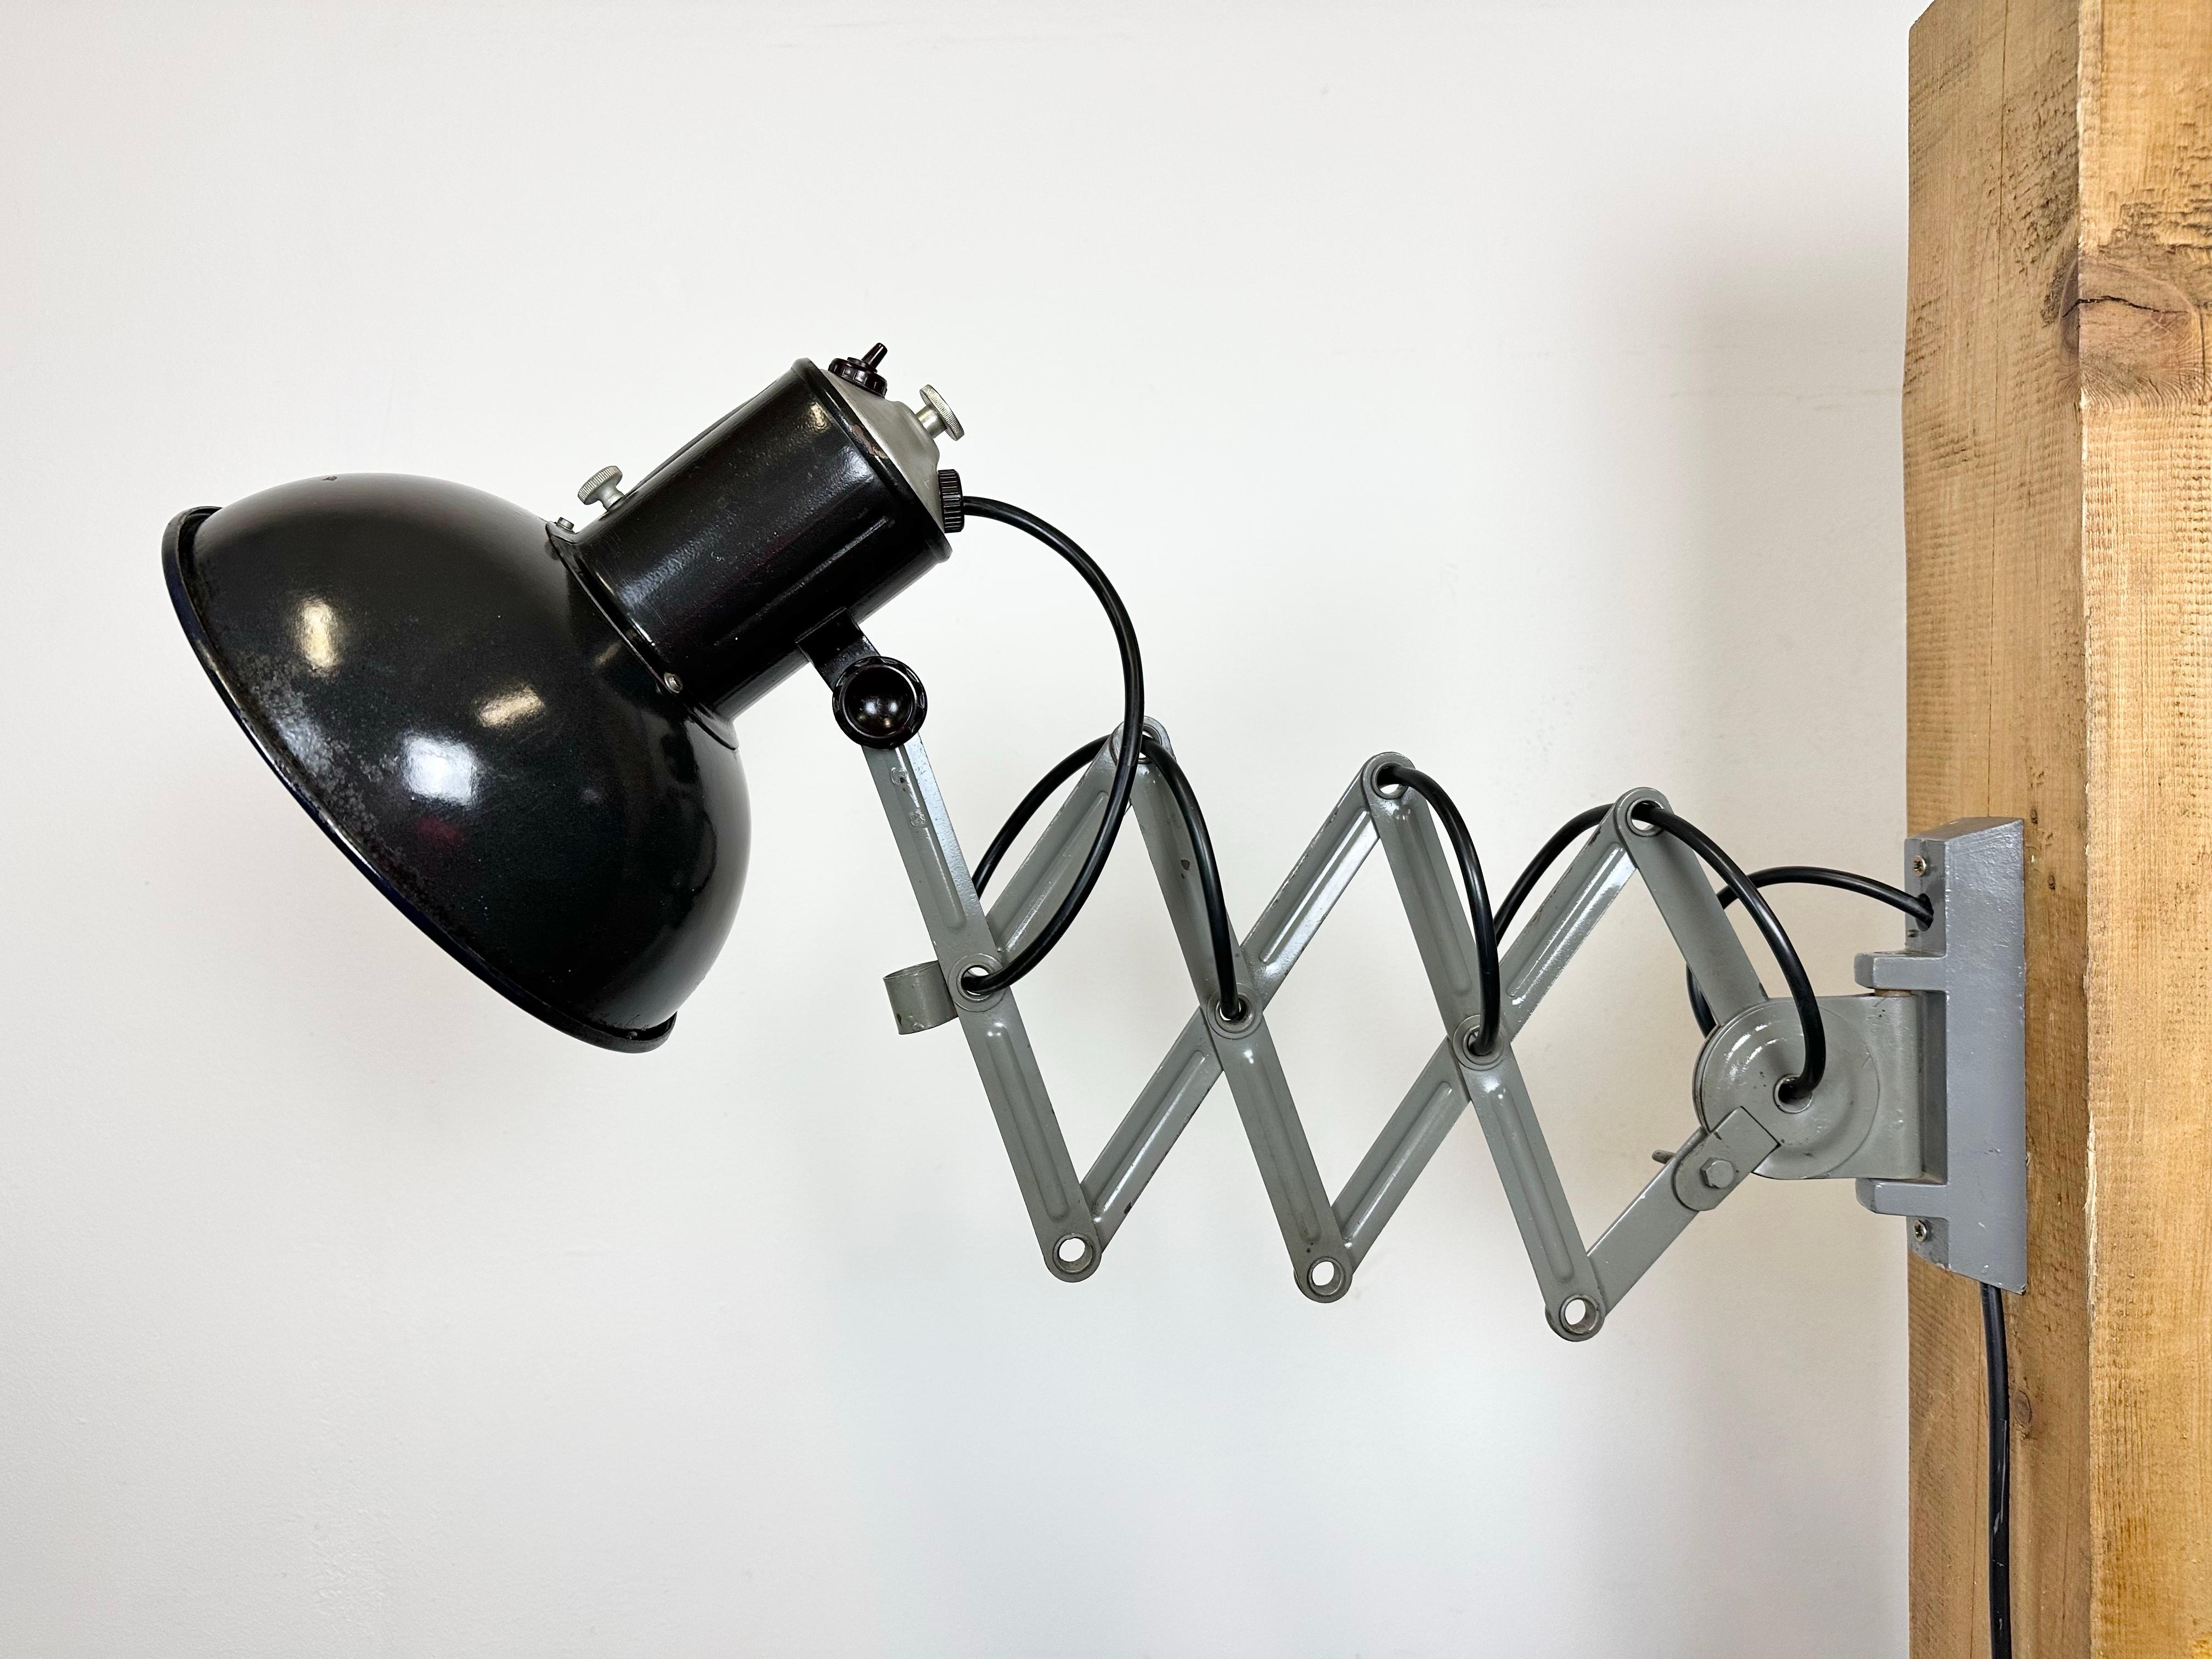 Cette lampe à ciseaux industrielle vintage a été produite dans l'ancienne Tchécoslovaquie au cours des années 1950. La lampe a un abat-jour en métal émaillé noir avec intérieur émaillé blanc. Le bras de ciseaux en fer gris est extensible et peut